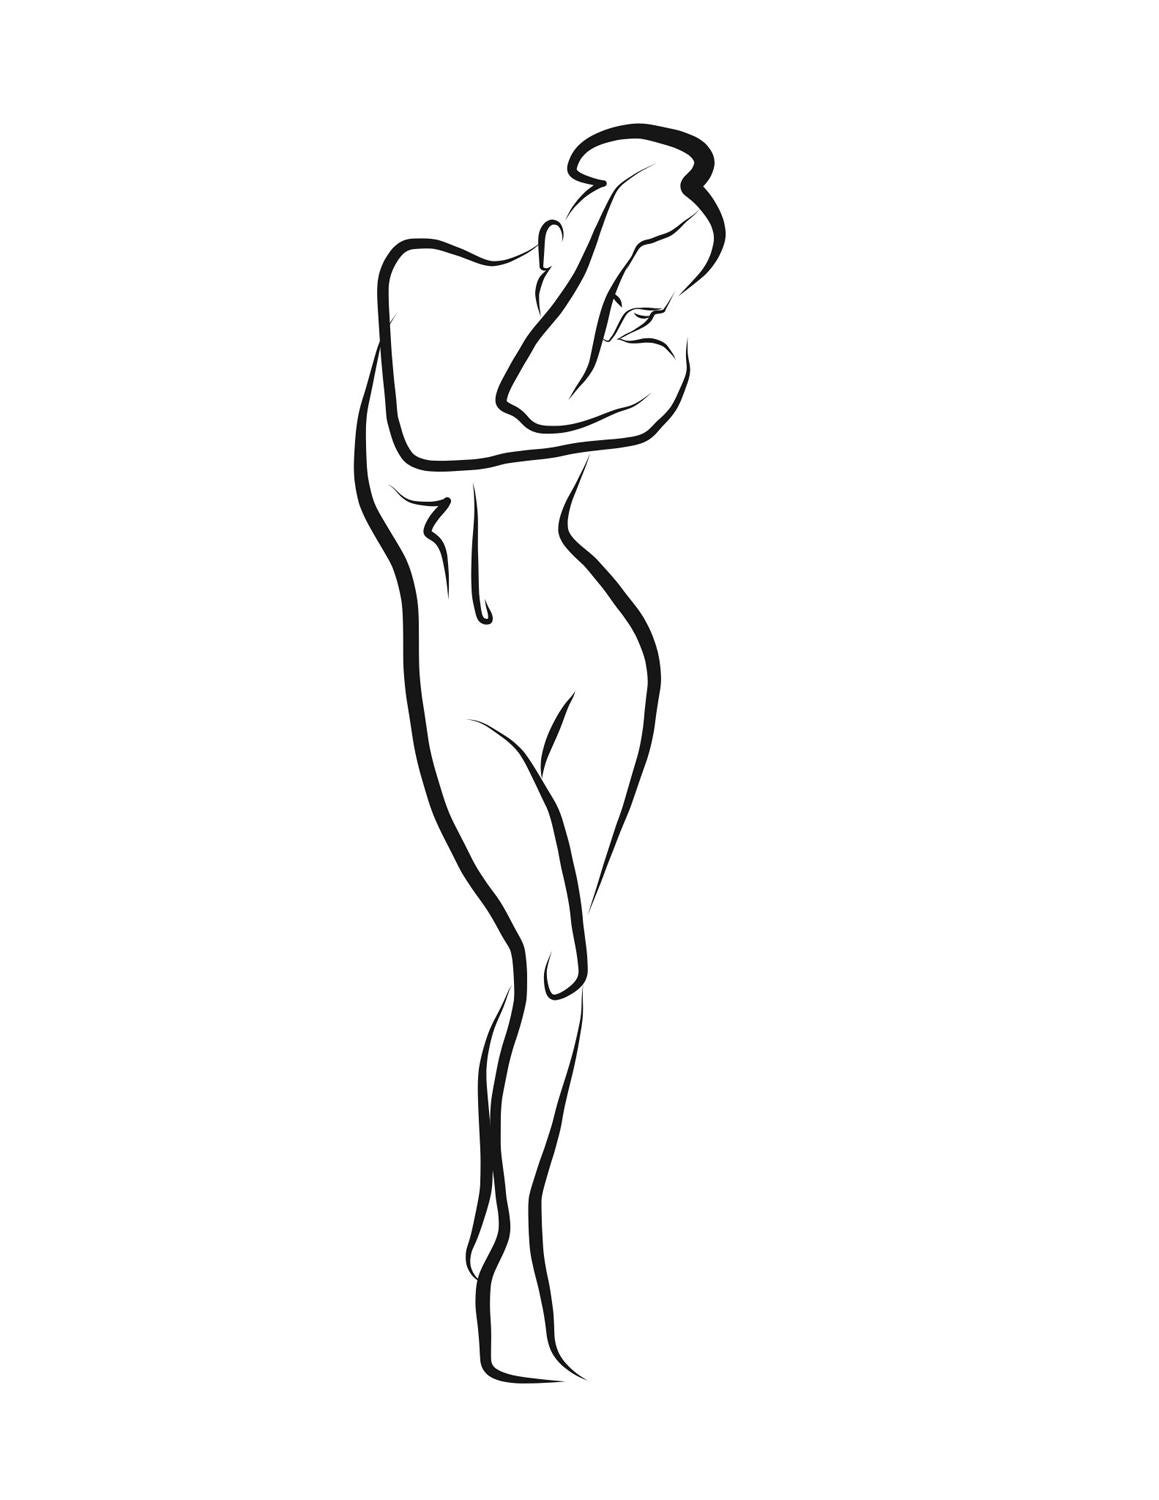 Haiku #26 - Digital Vector Drawing Shy Standing Female Nude Woman Figure - Art by Michael Binkley